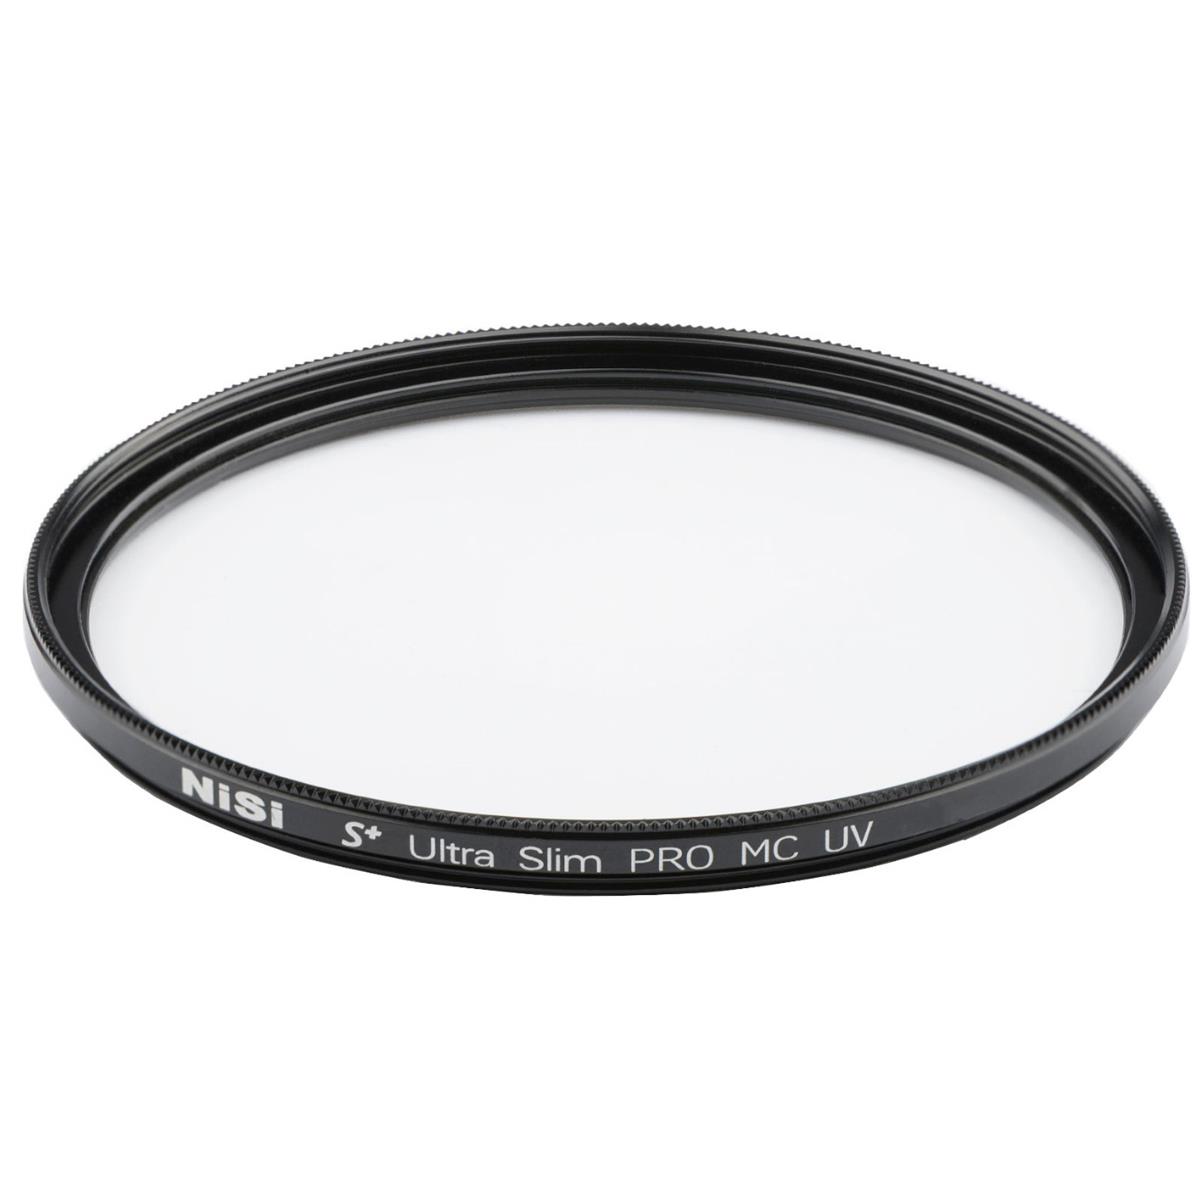 NiSi 95mm S+ Ultra Slim Pro MC UV Filter (Adorama Exclusive) линзы для лазерного коллиматора с высоким коэффициентом пропускания света